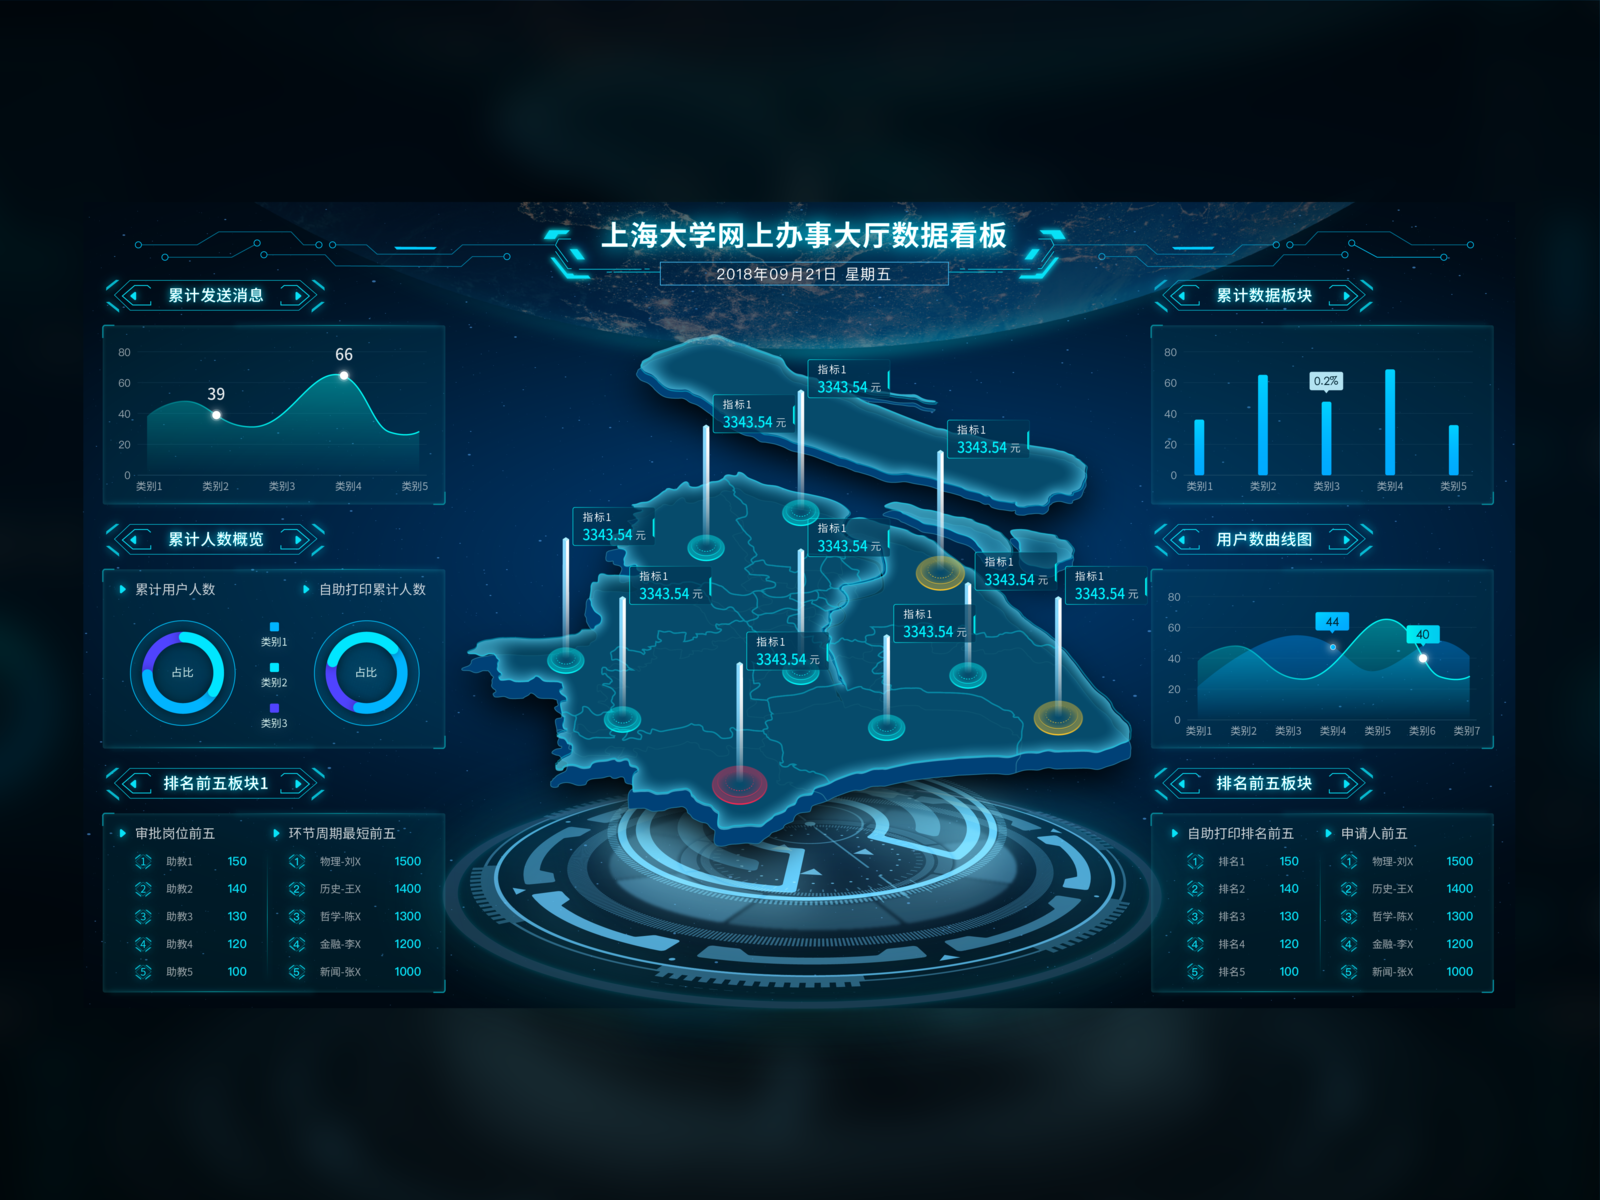 上海XX大学看板 data illustration ui web